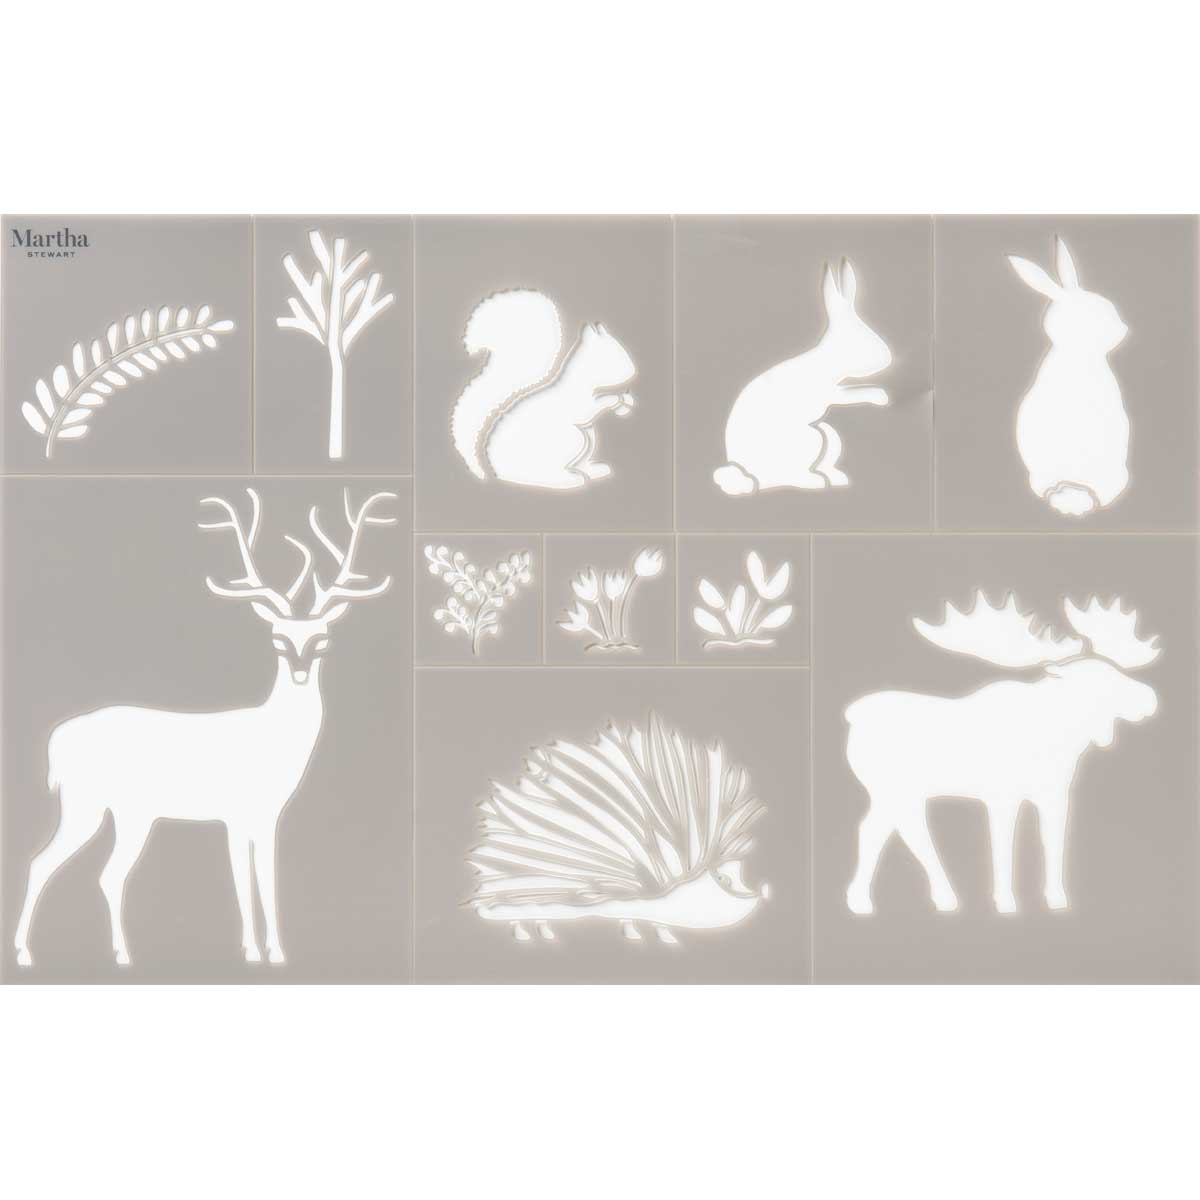 Martha Stewart ® Adhesive Stencil - Woodland Animals - 17643